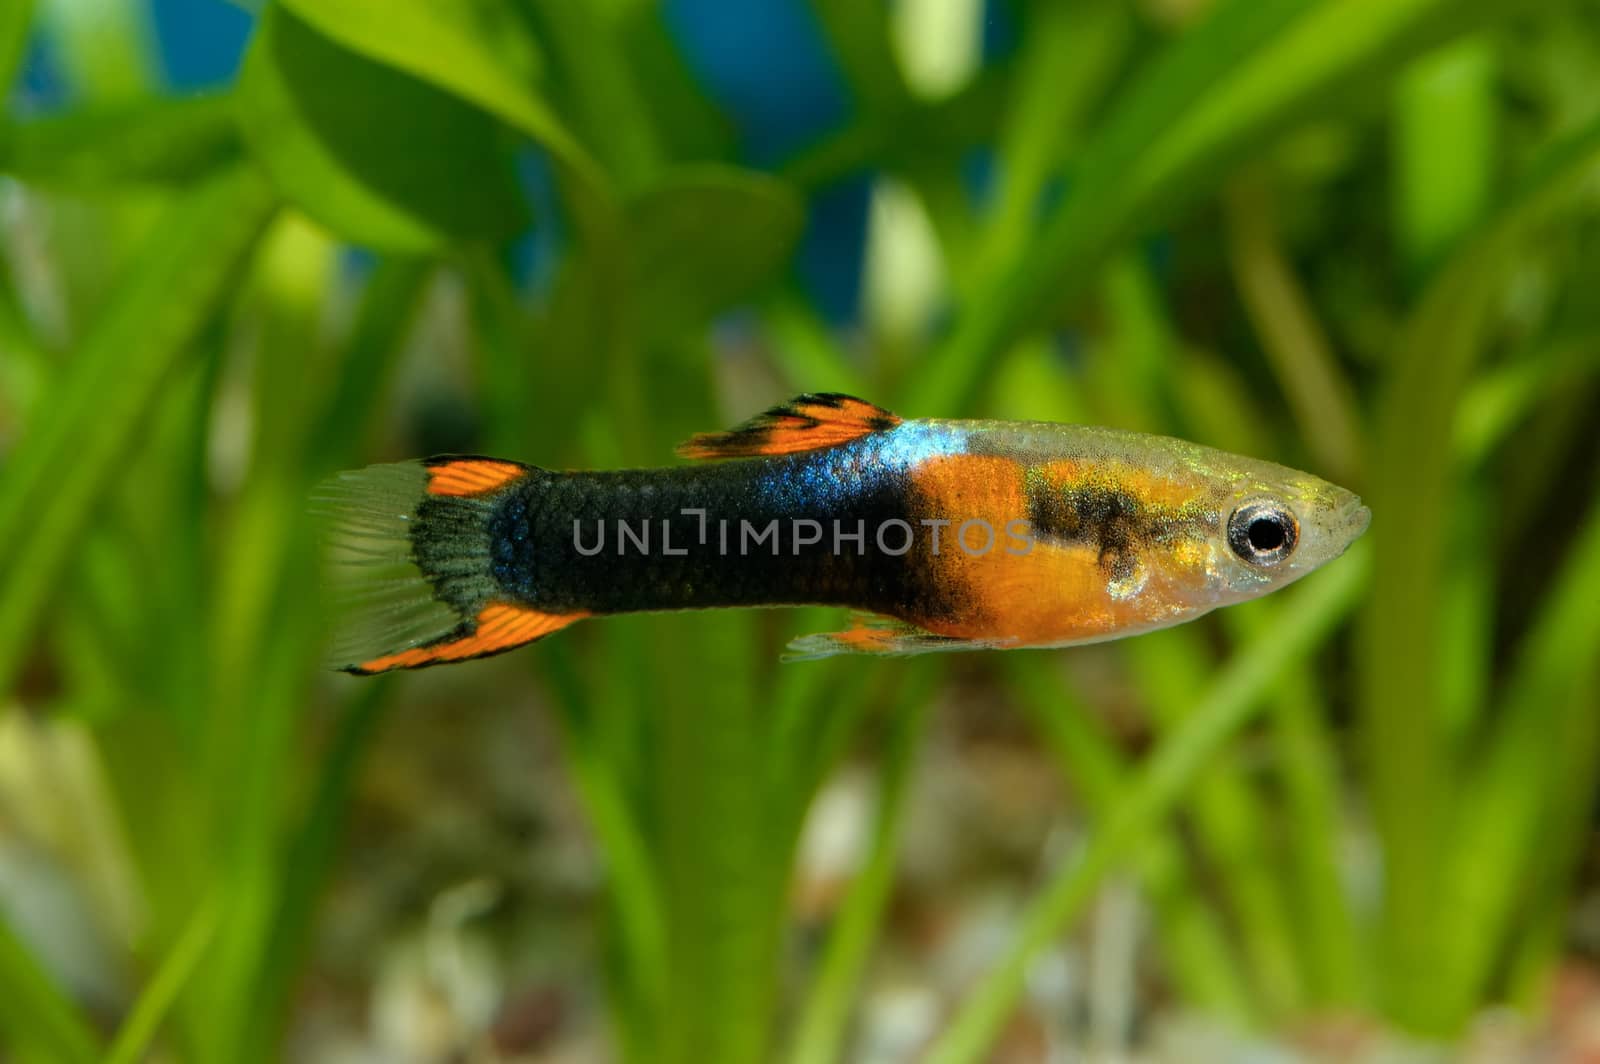 Nice colored aquarium fish from genus Poecilia.